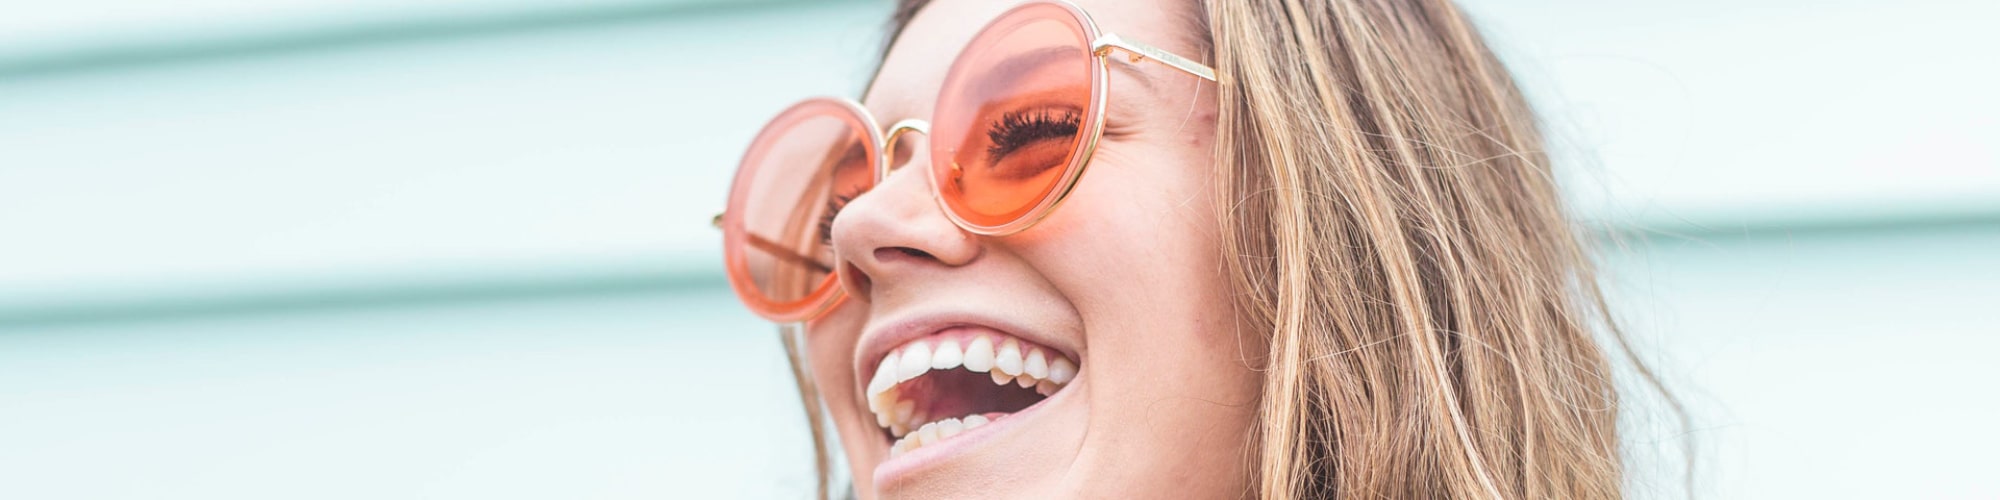 Ung kvinder med solbriller griner med tænder